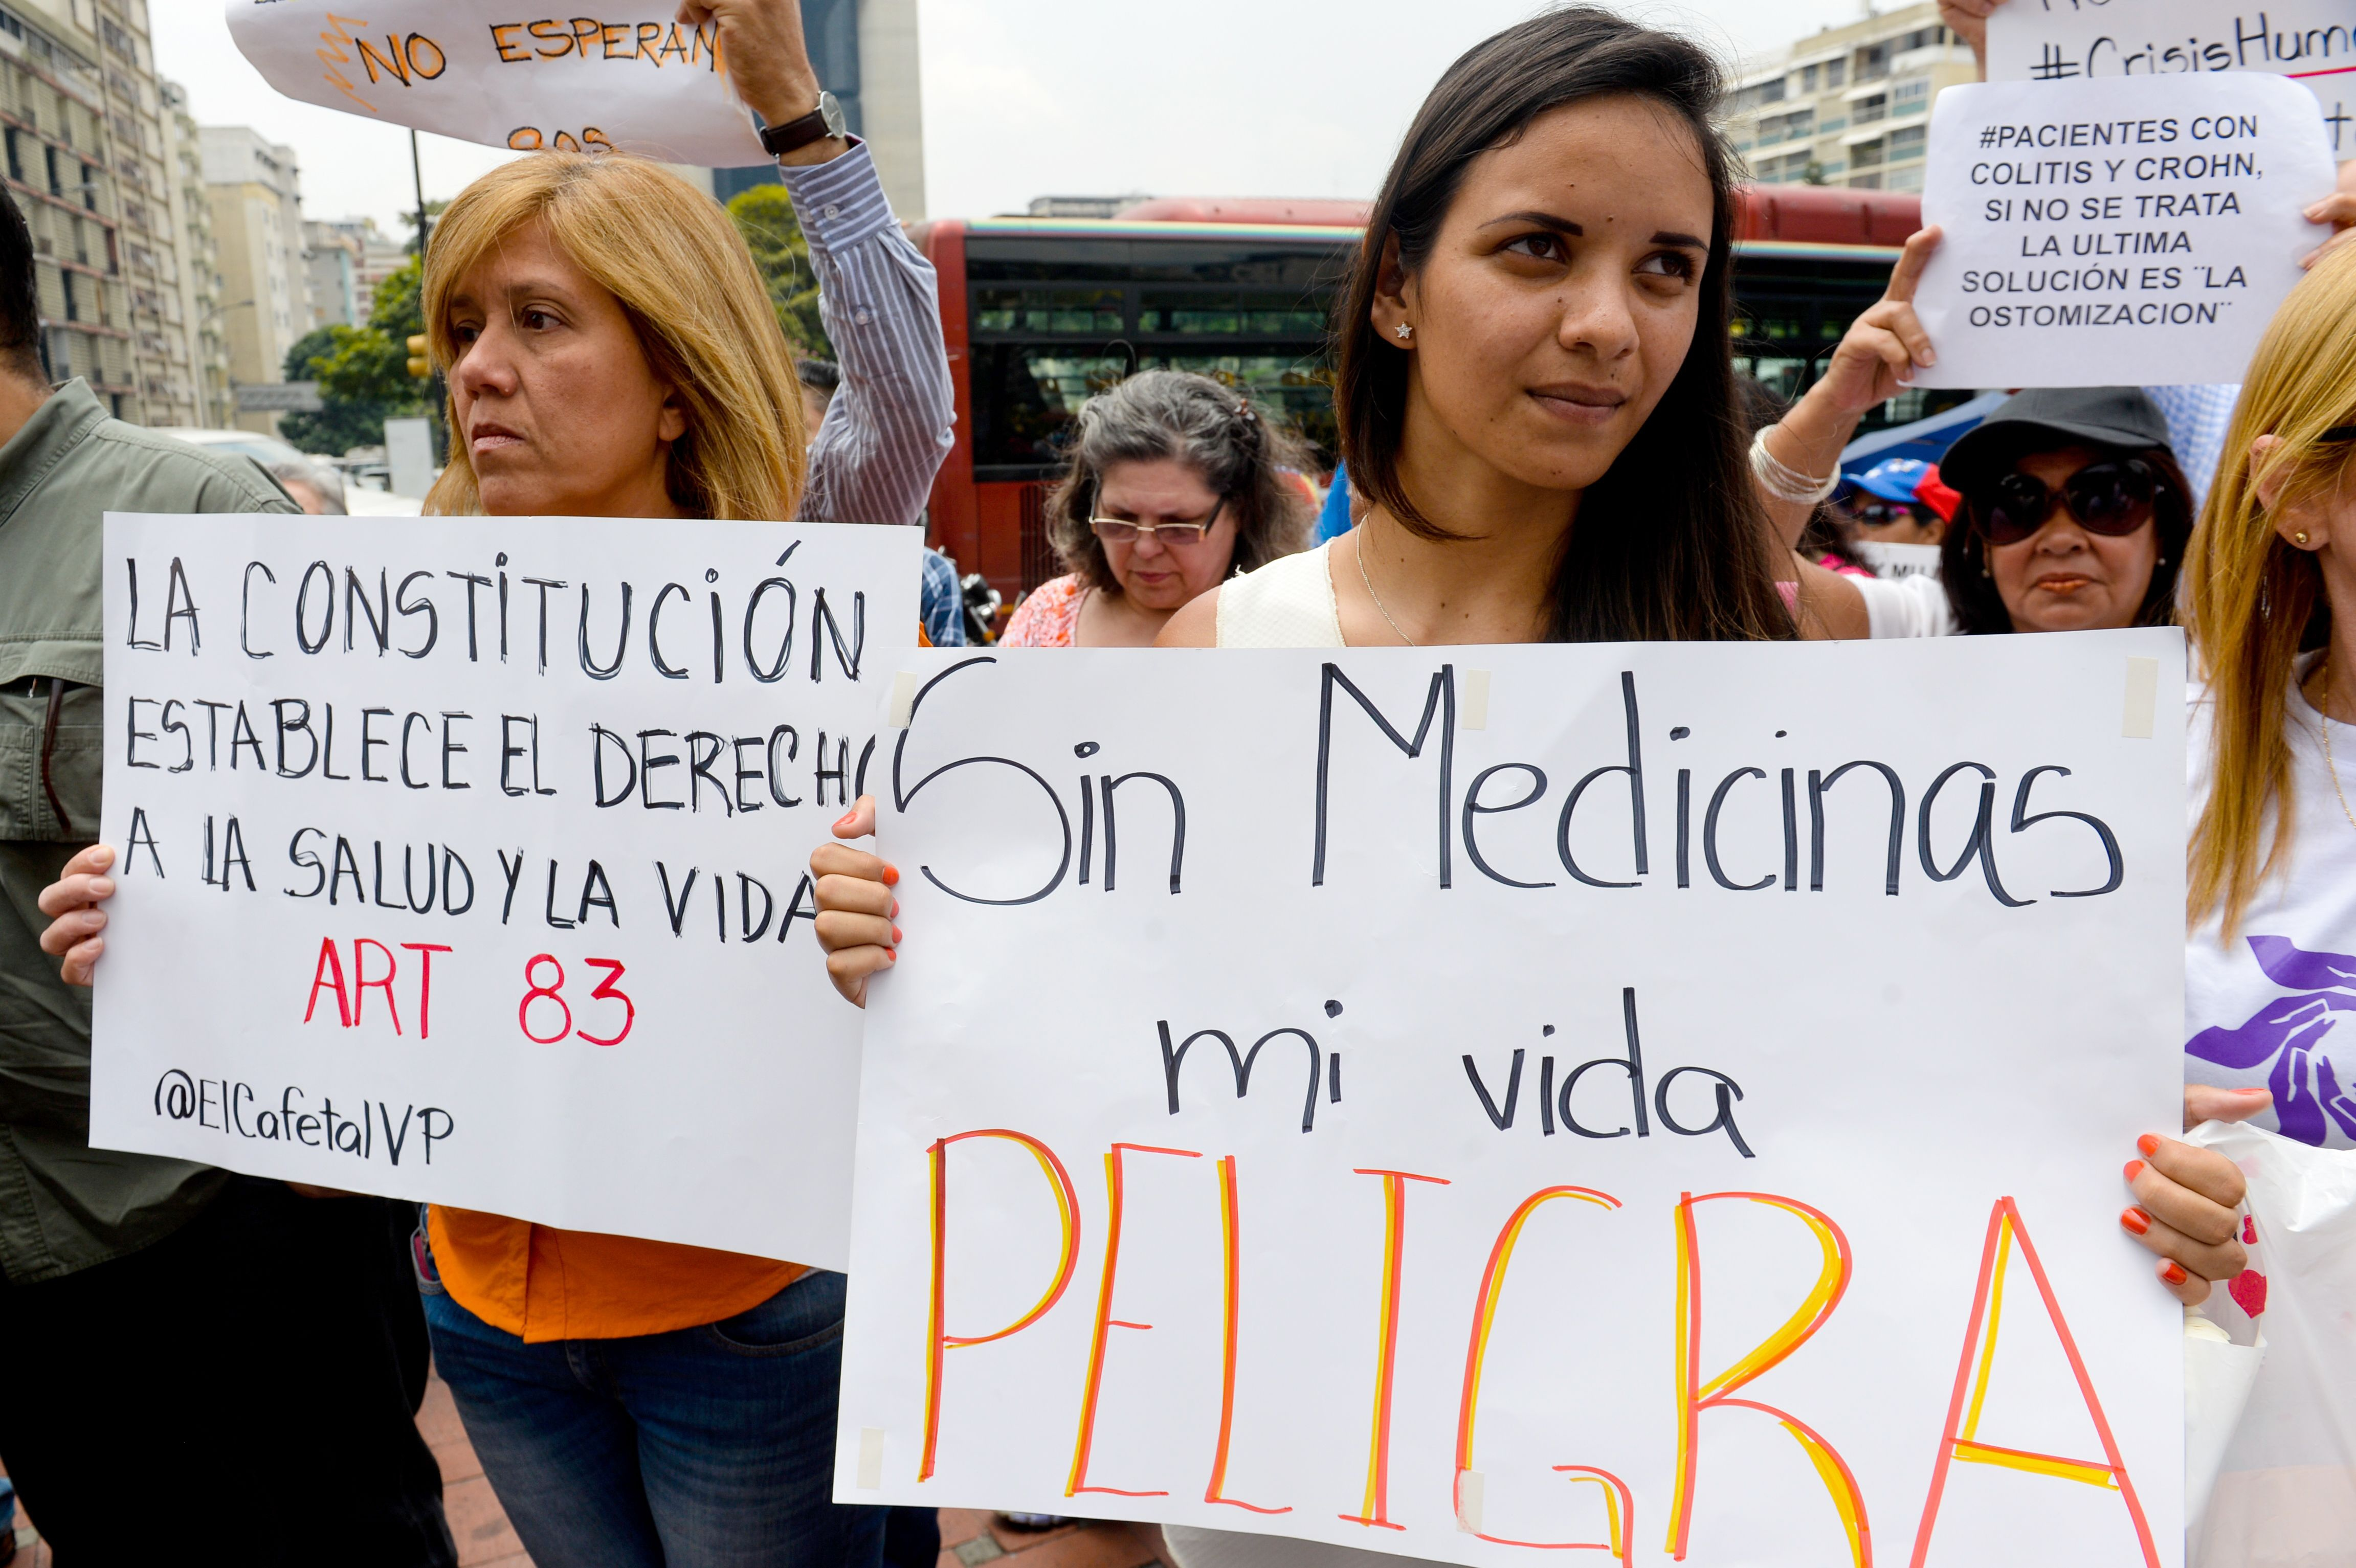 Vivir en Venezuela con una condición crónica de salud en tiempos de COVID-19